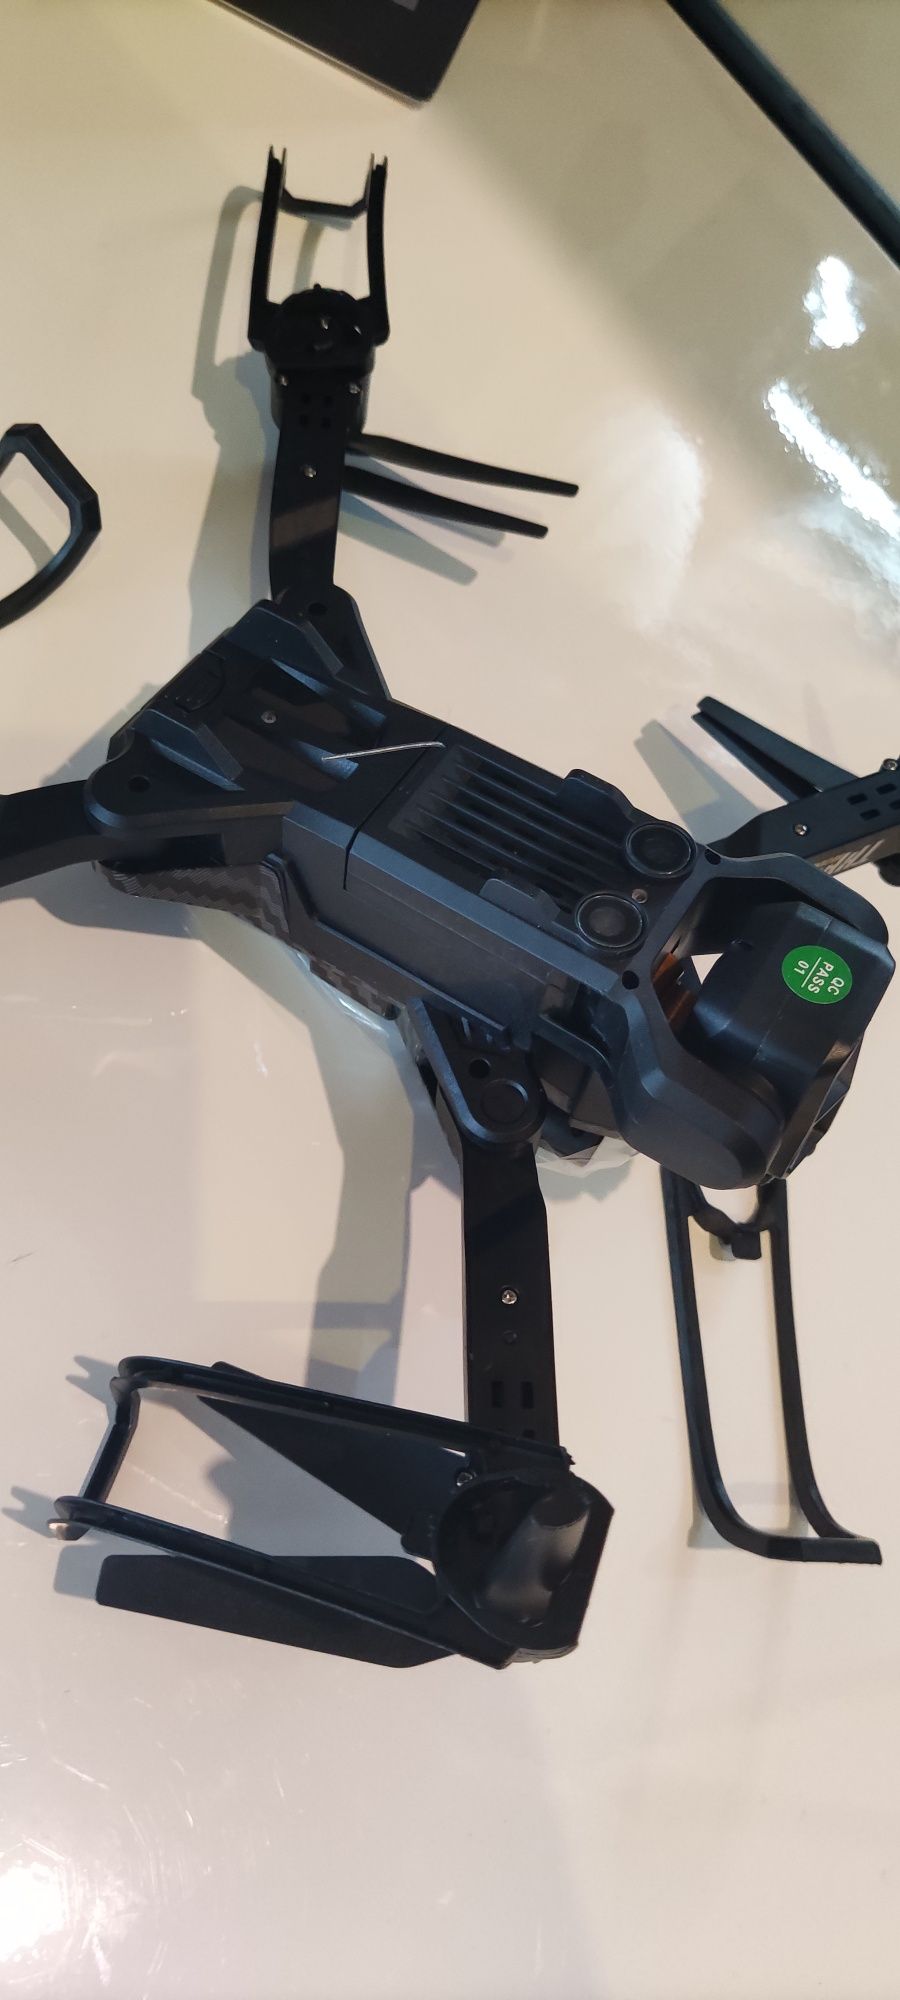 Nowy DRON wraz z walizką PCV XxL THpee P11 Carbon